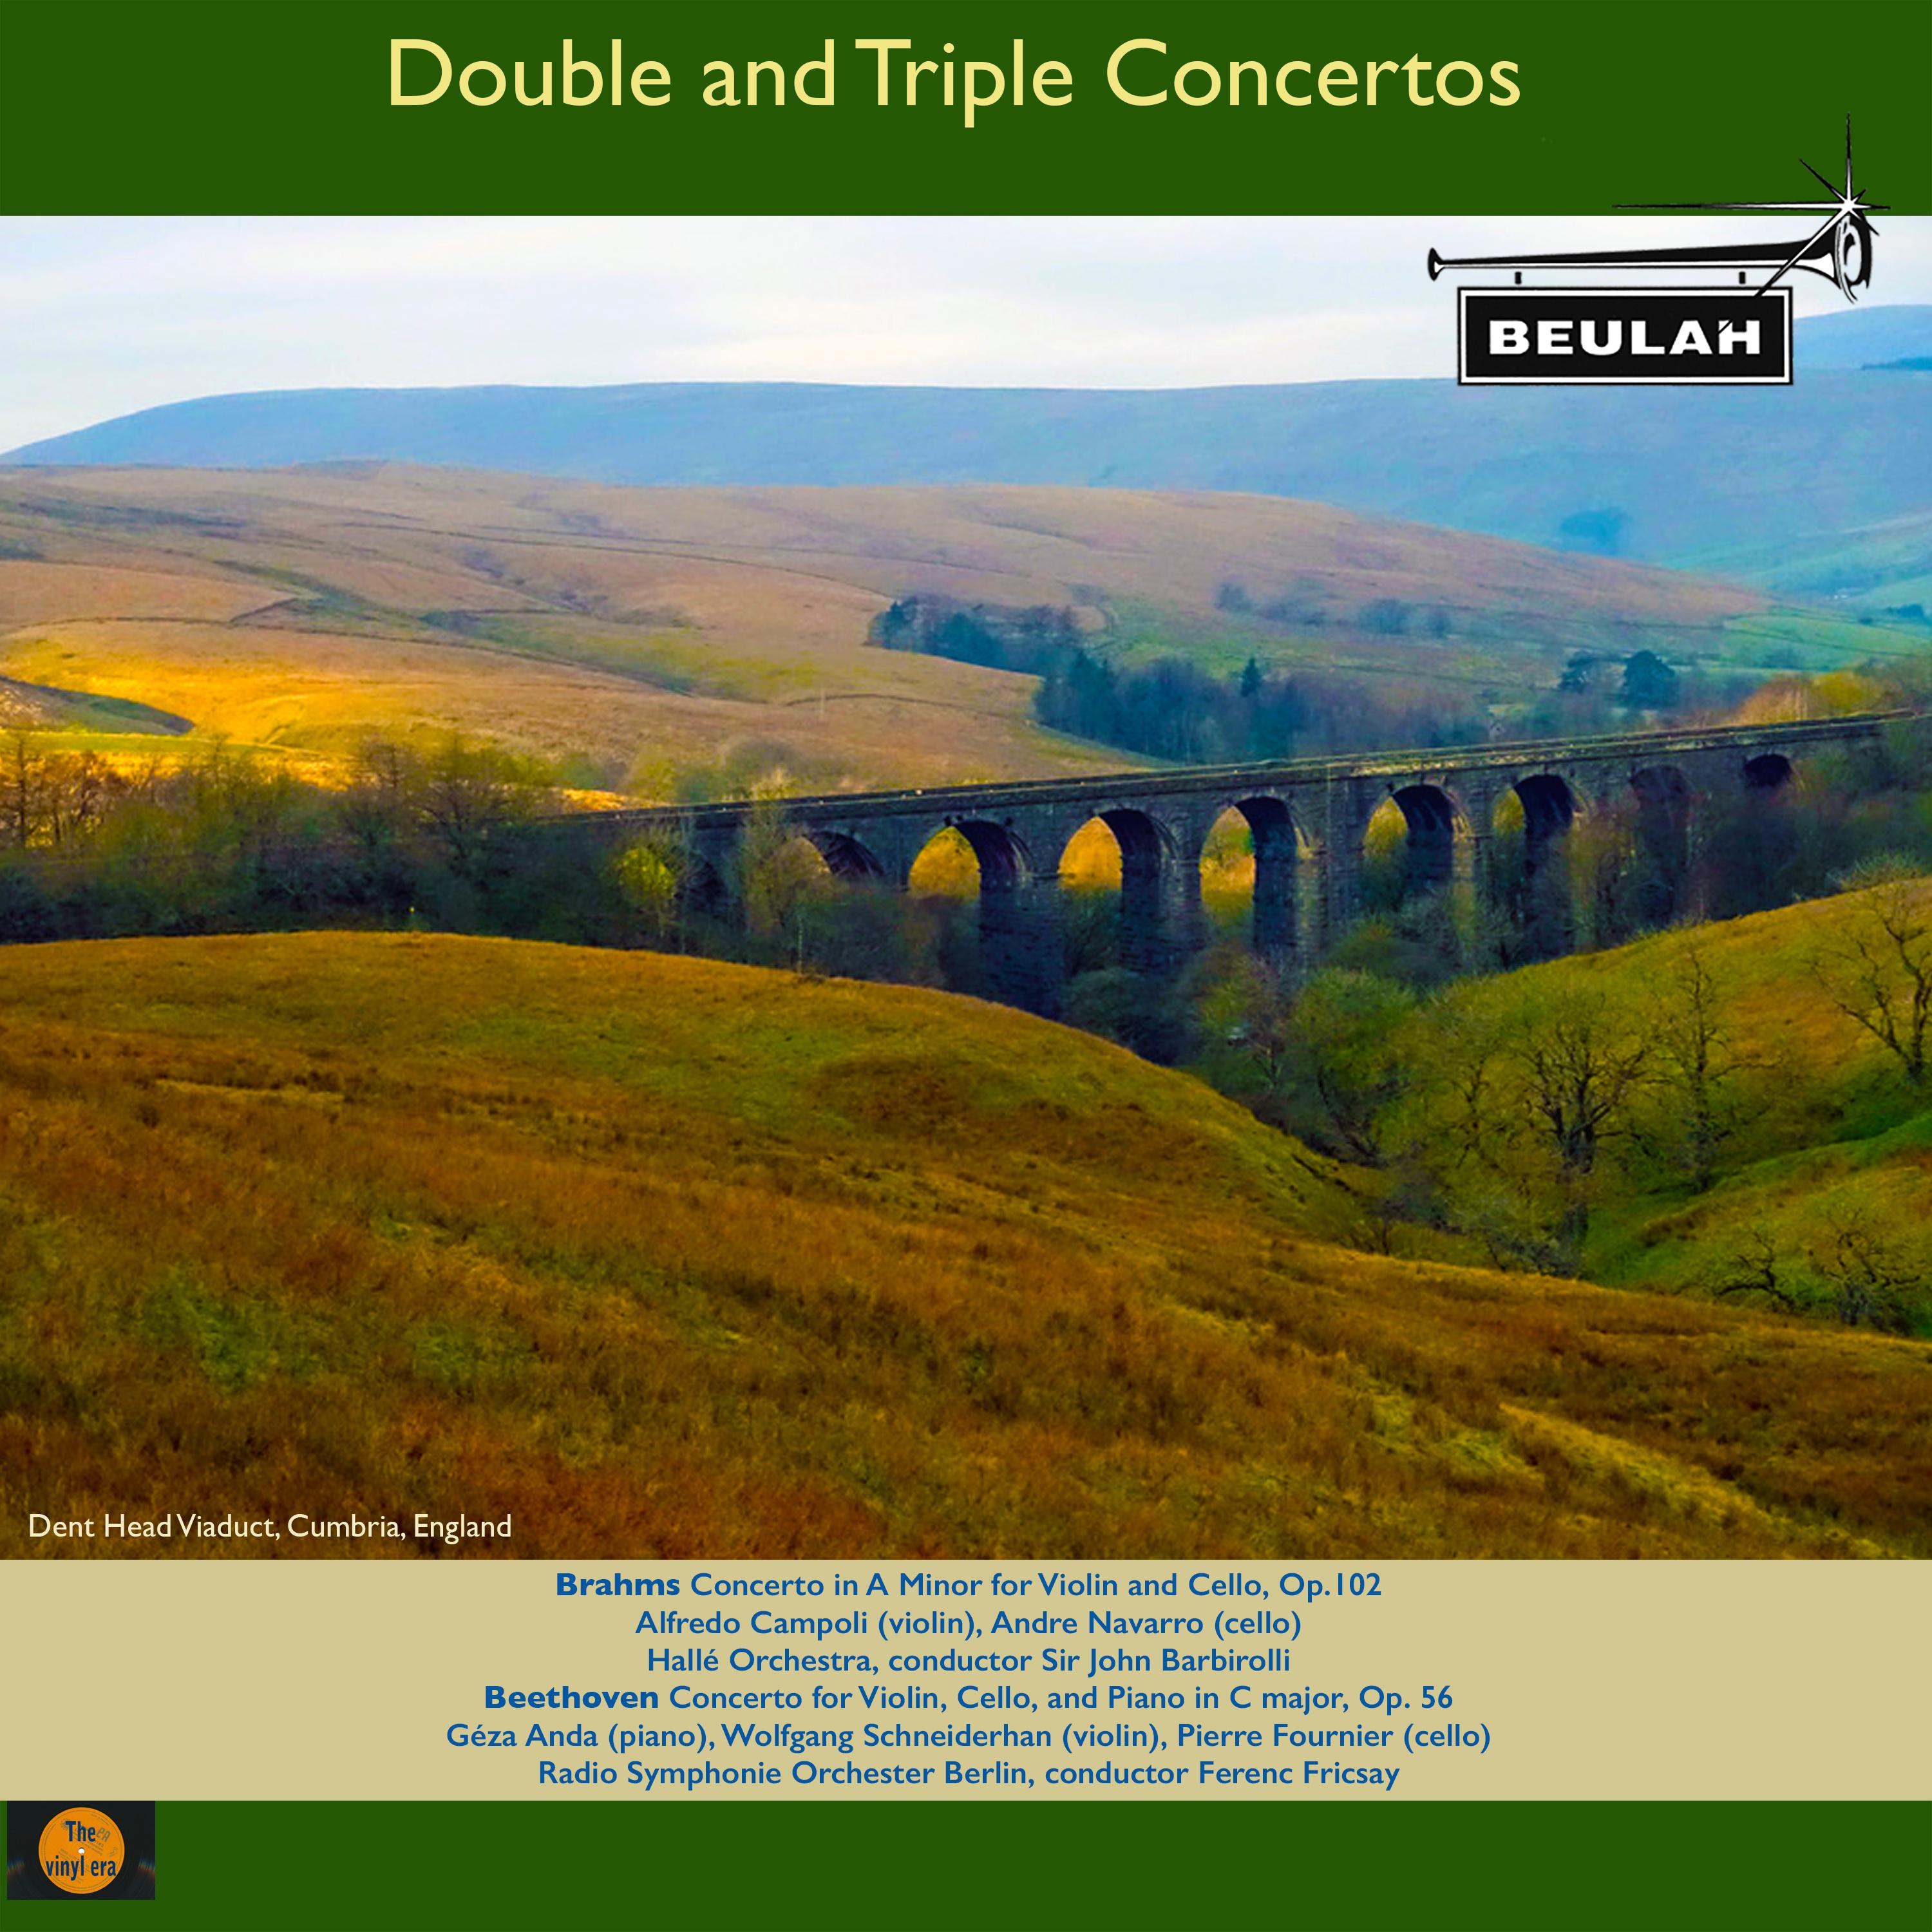 Concerto for Violin, Cello, and Piano in C Major, Op. 56: 1. Allegro